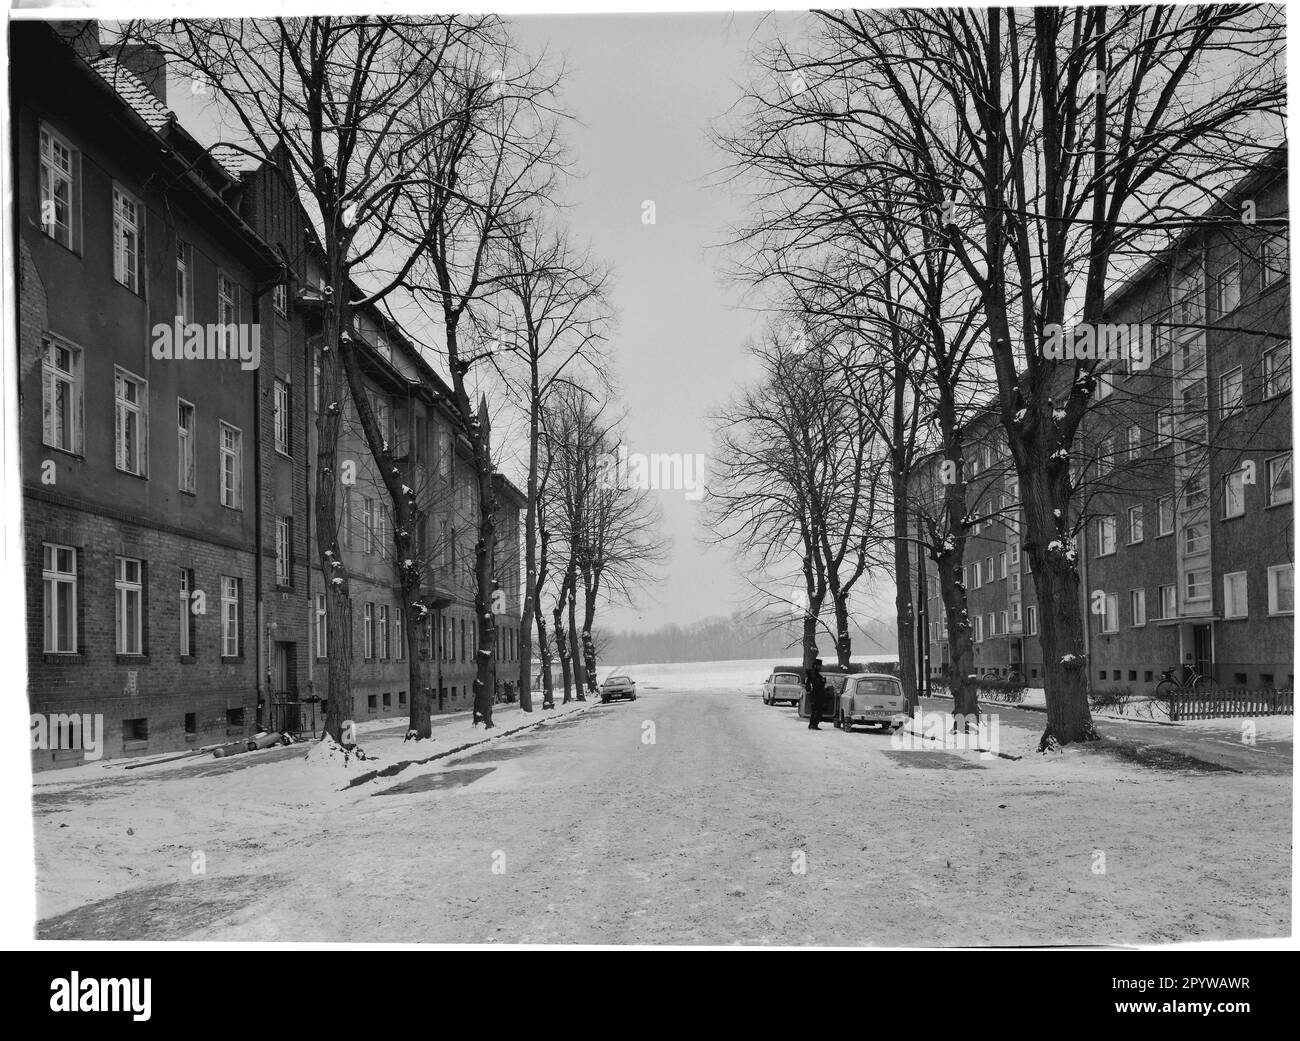 Rue avec arbres et maisons en hiver avec neige. Wildau, quartier de Dahme-Spreewald, Brandebourg. Photo, 1994. Banque D'Images